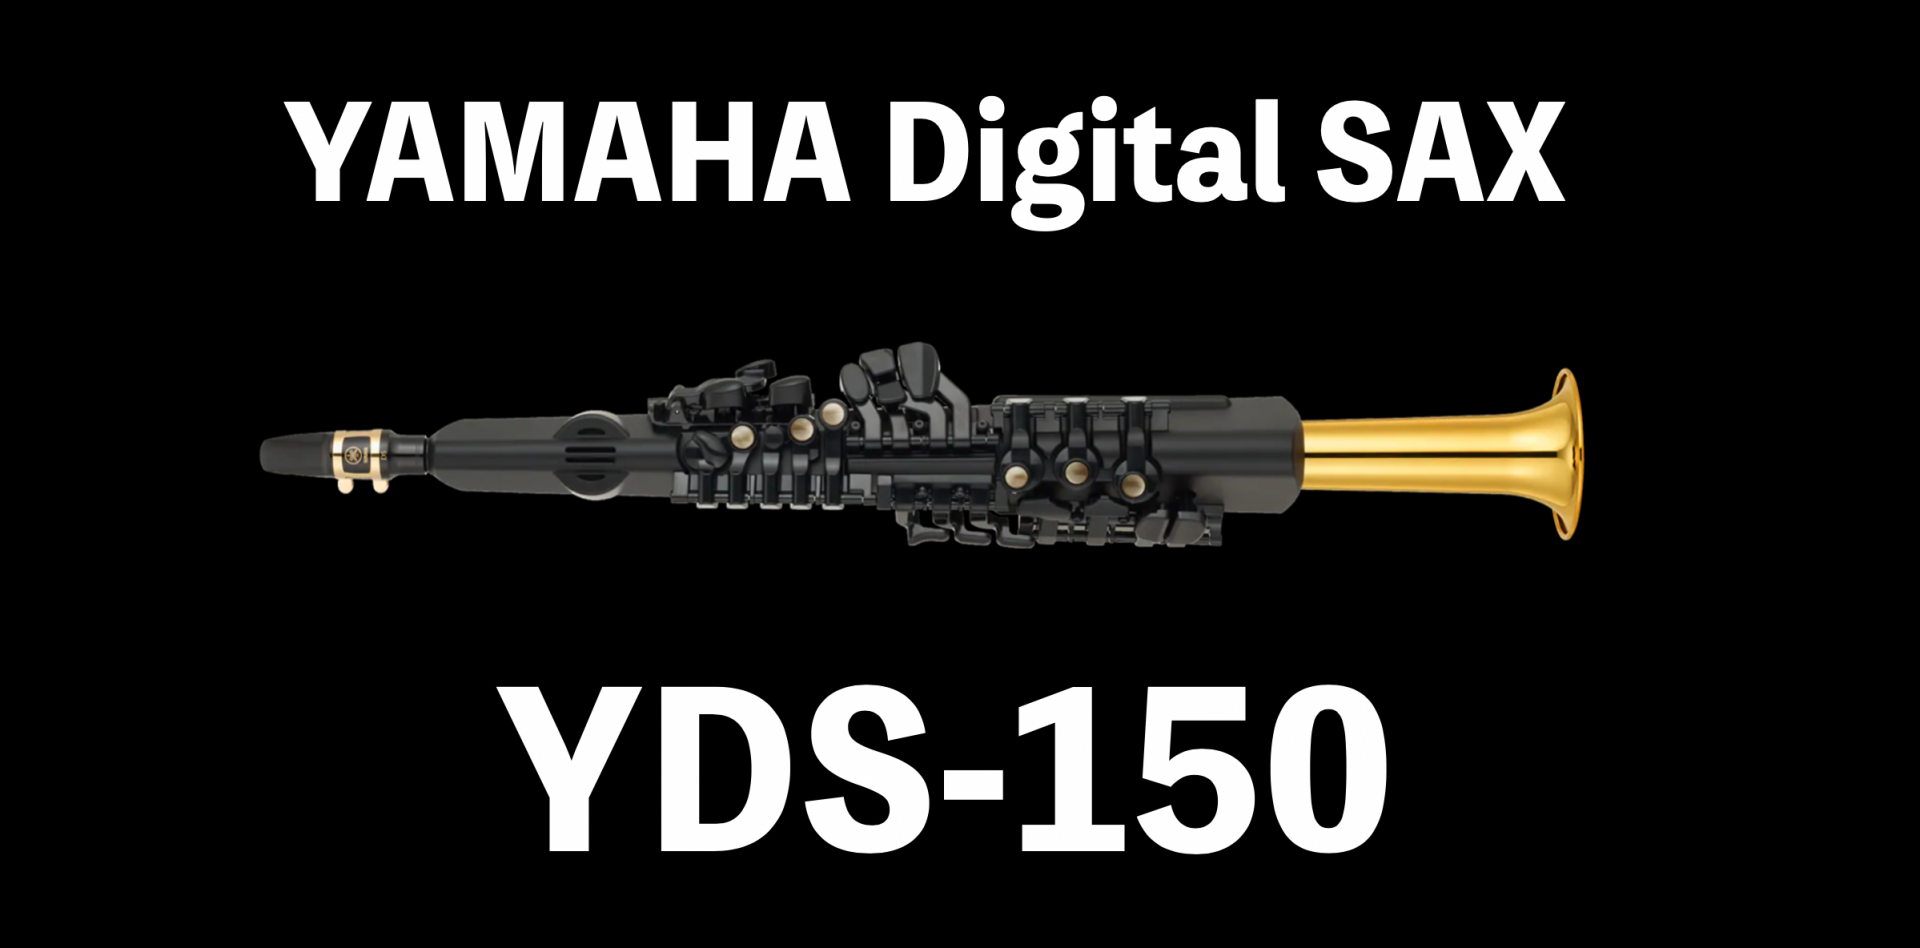 *ヤマハから新しい管楽器製品　デジタルサックスが登場しました！ **どんな楽器？ YDS-150 「デジタルサックス」と銘打たれ、現在のAKAIのウィンドシンセEWIシリーズやRolandのエアロフォン（AE）シリーズと近いカテゴリーとなる商品です。 ちなみに、YDSとは「Yamaha Digita […]